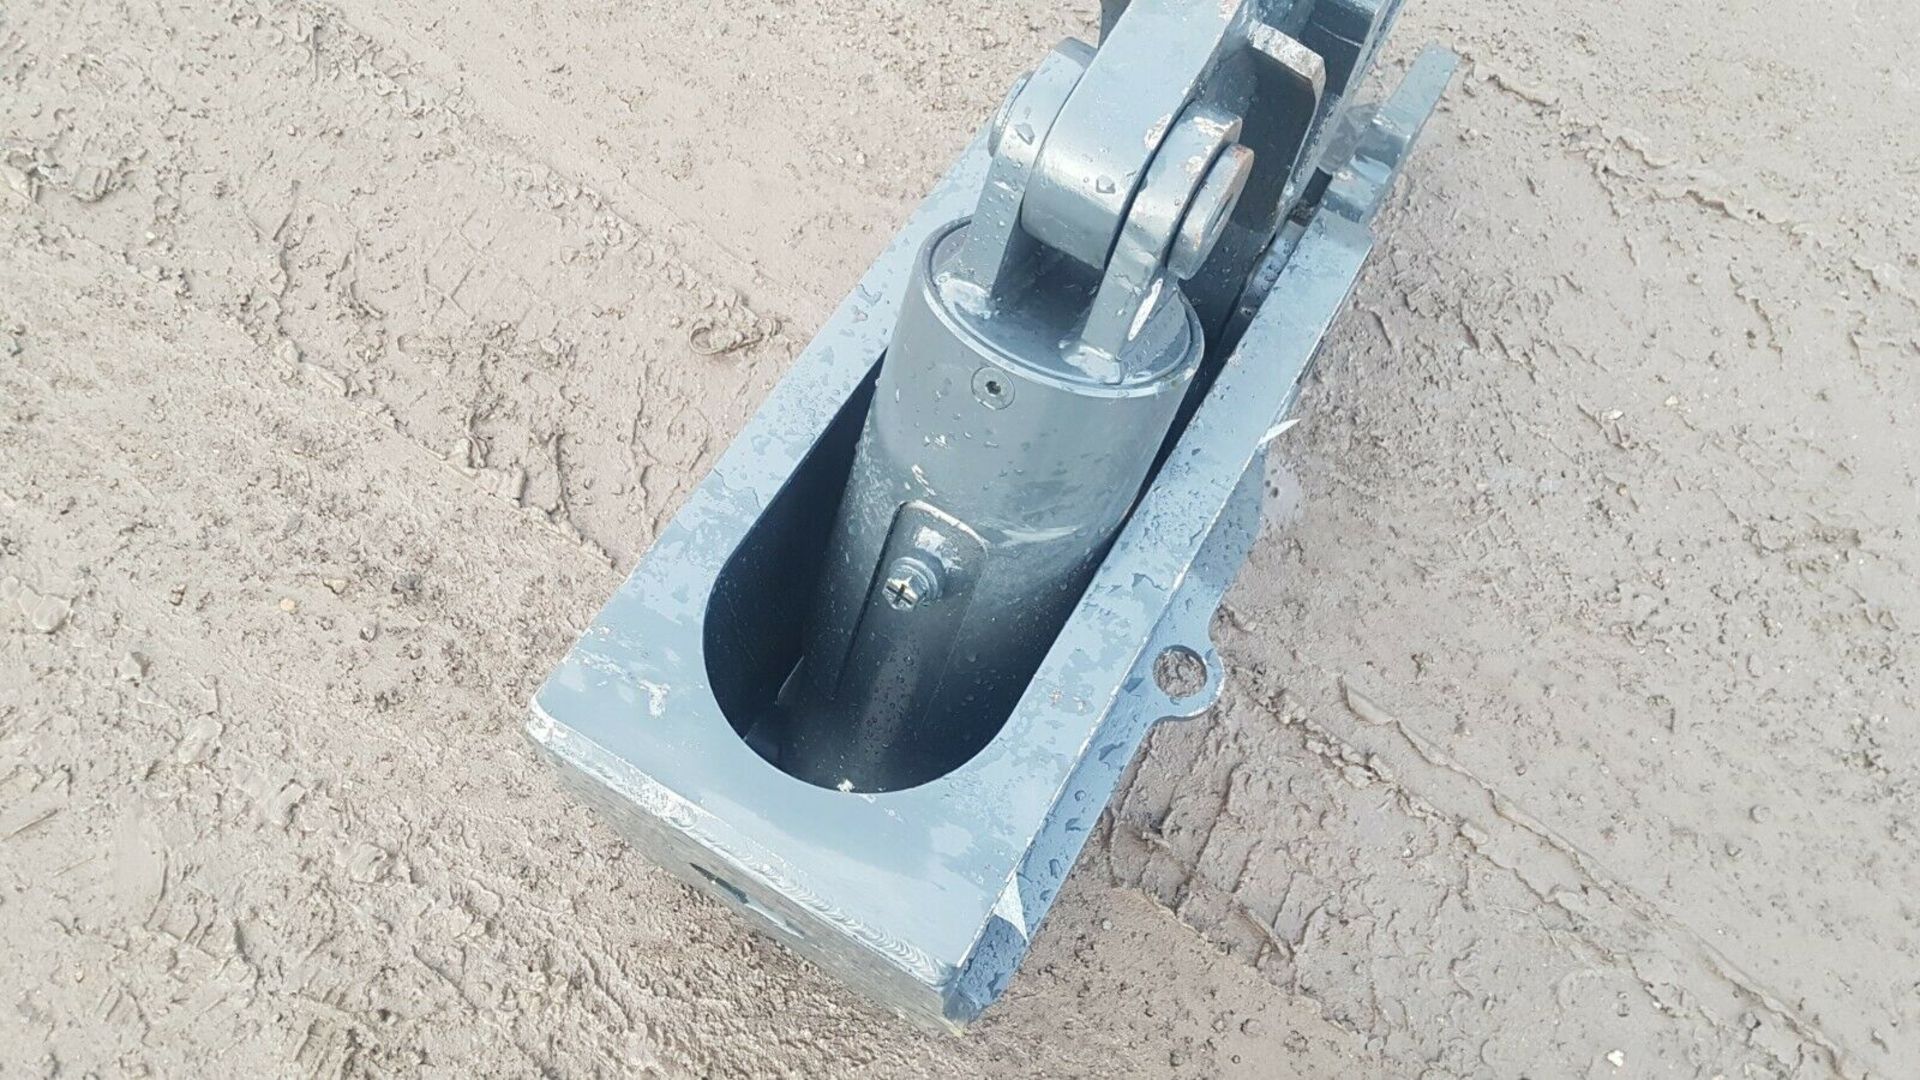 Mini Digger Excavator Pullverisor Conrete Muncher - Image 3 of 5